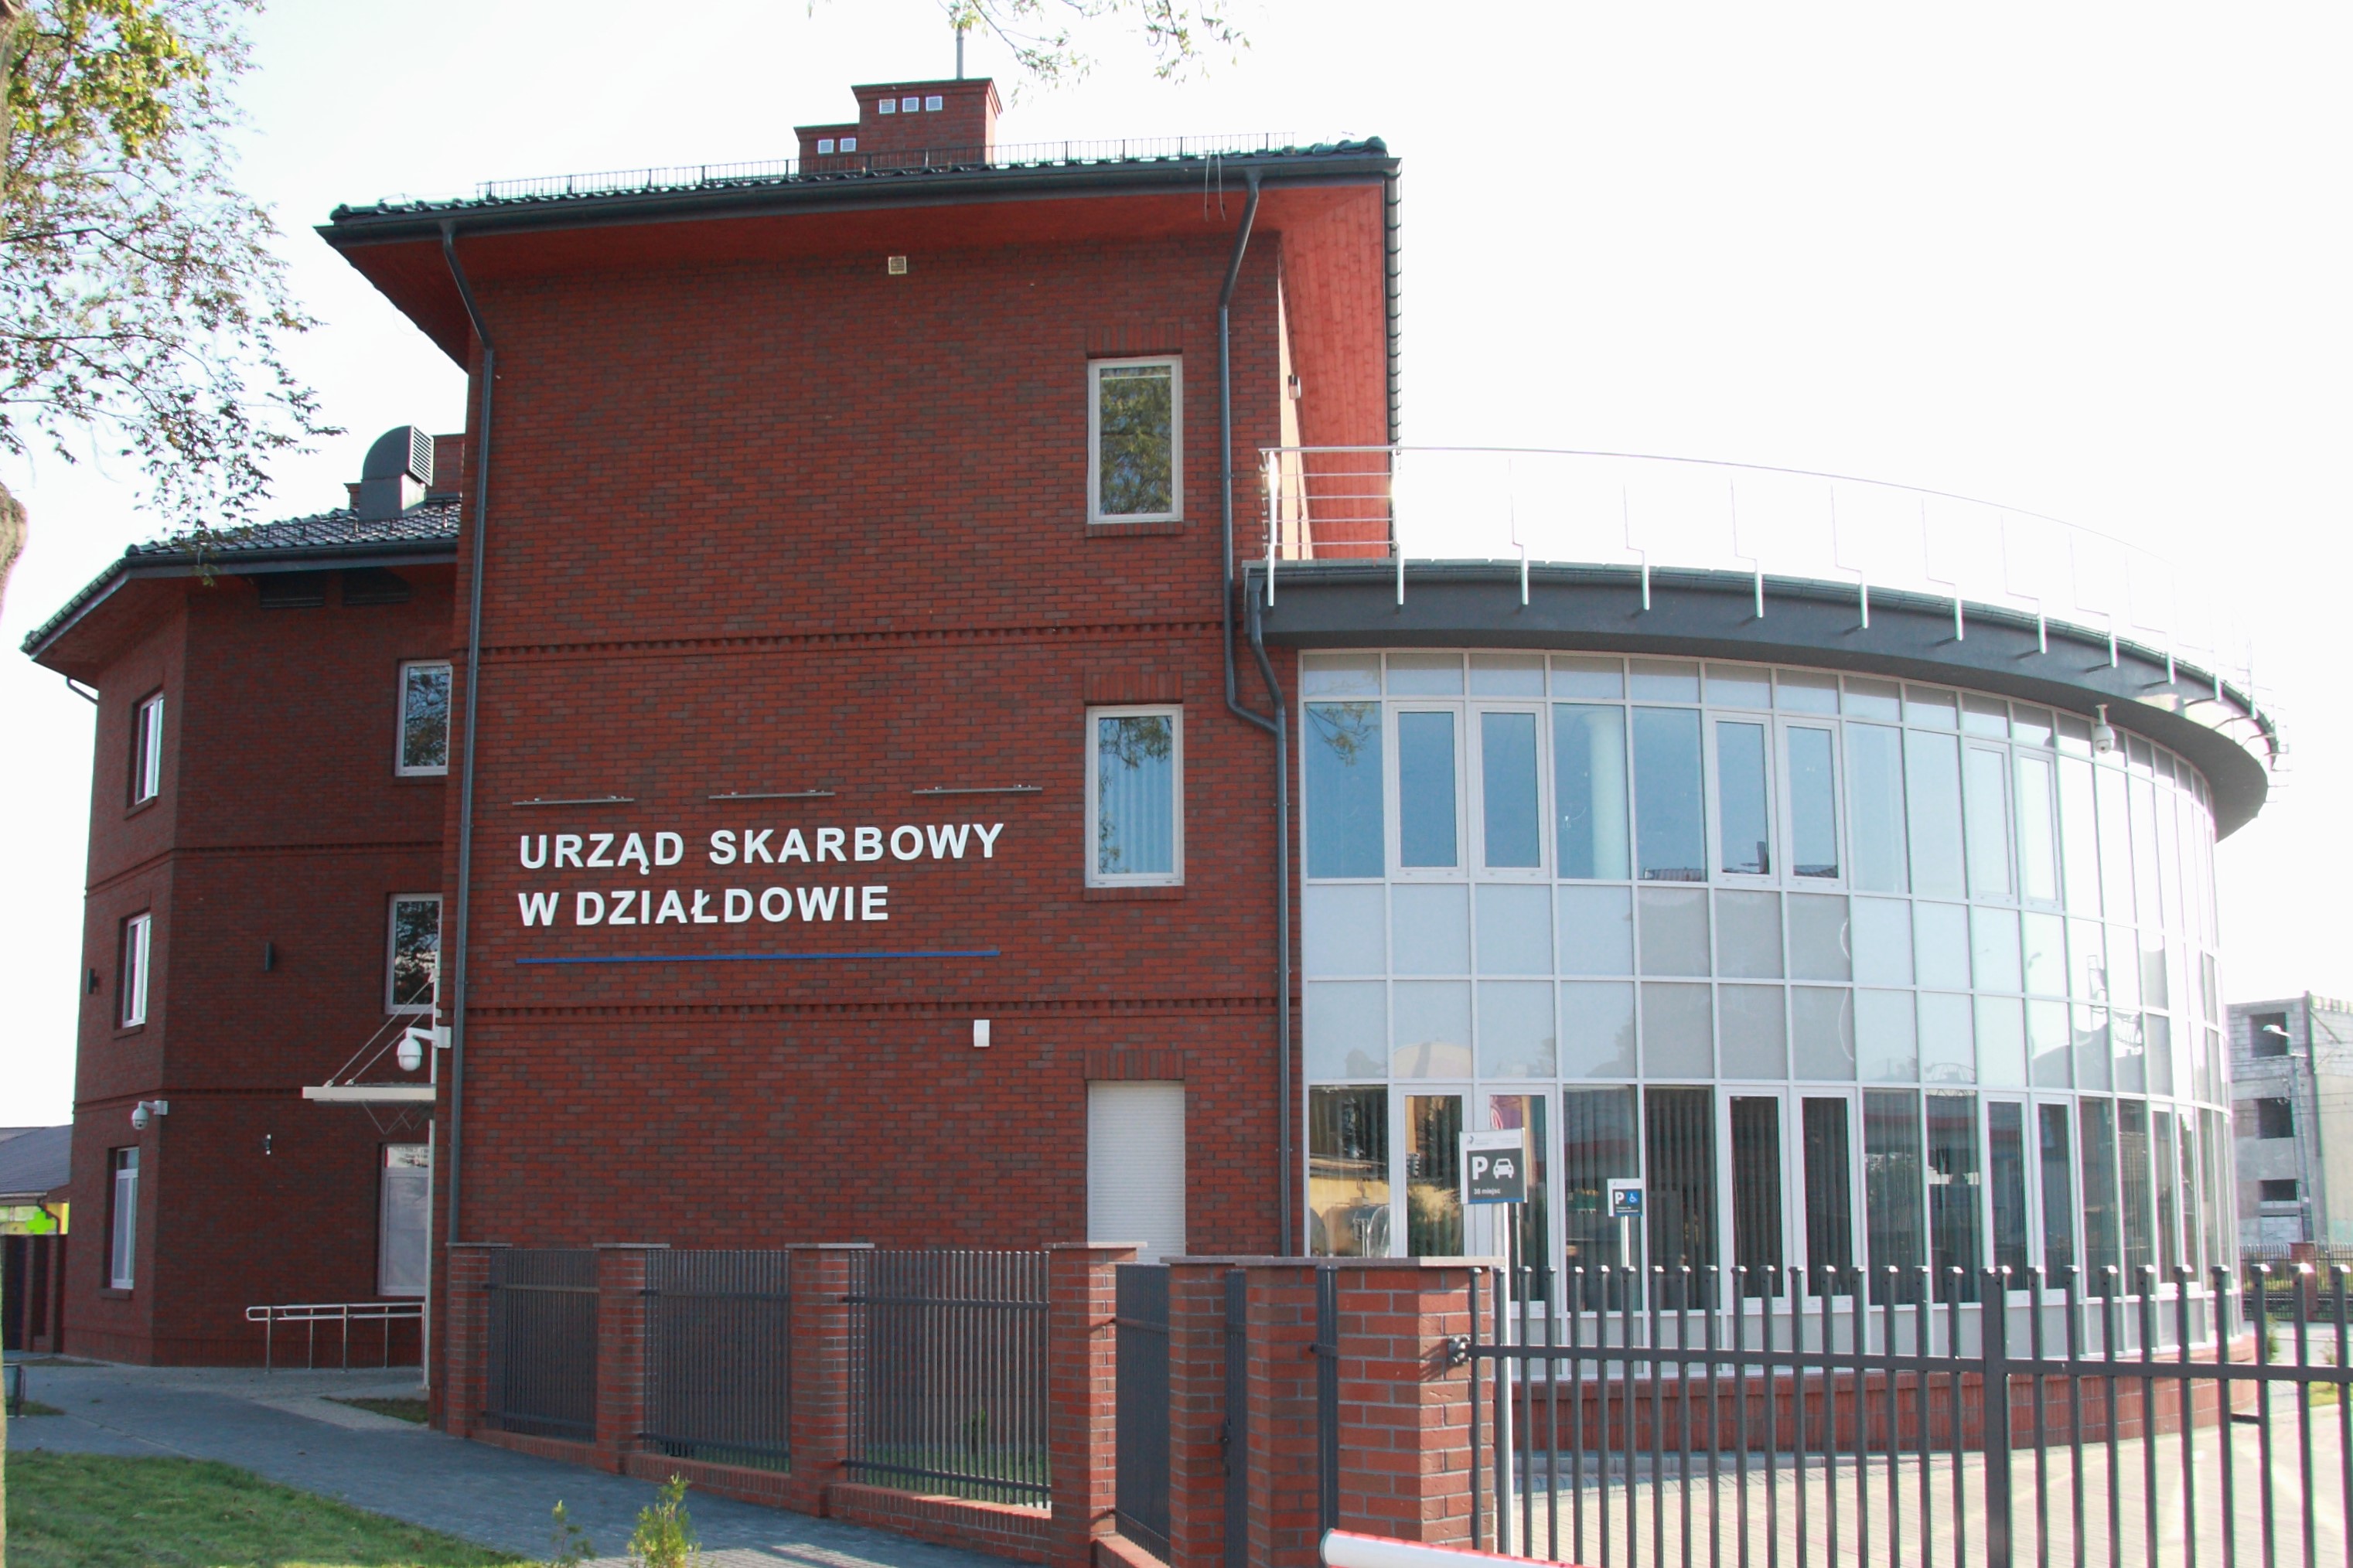 Budynek z czerwonej cegły, w którym znajduje się siedziba Urzędu Skarbowego w Działdowie.